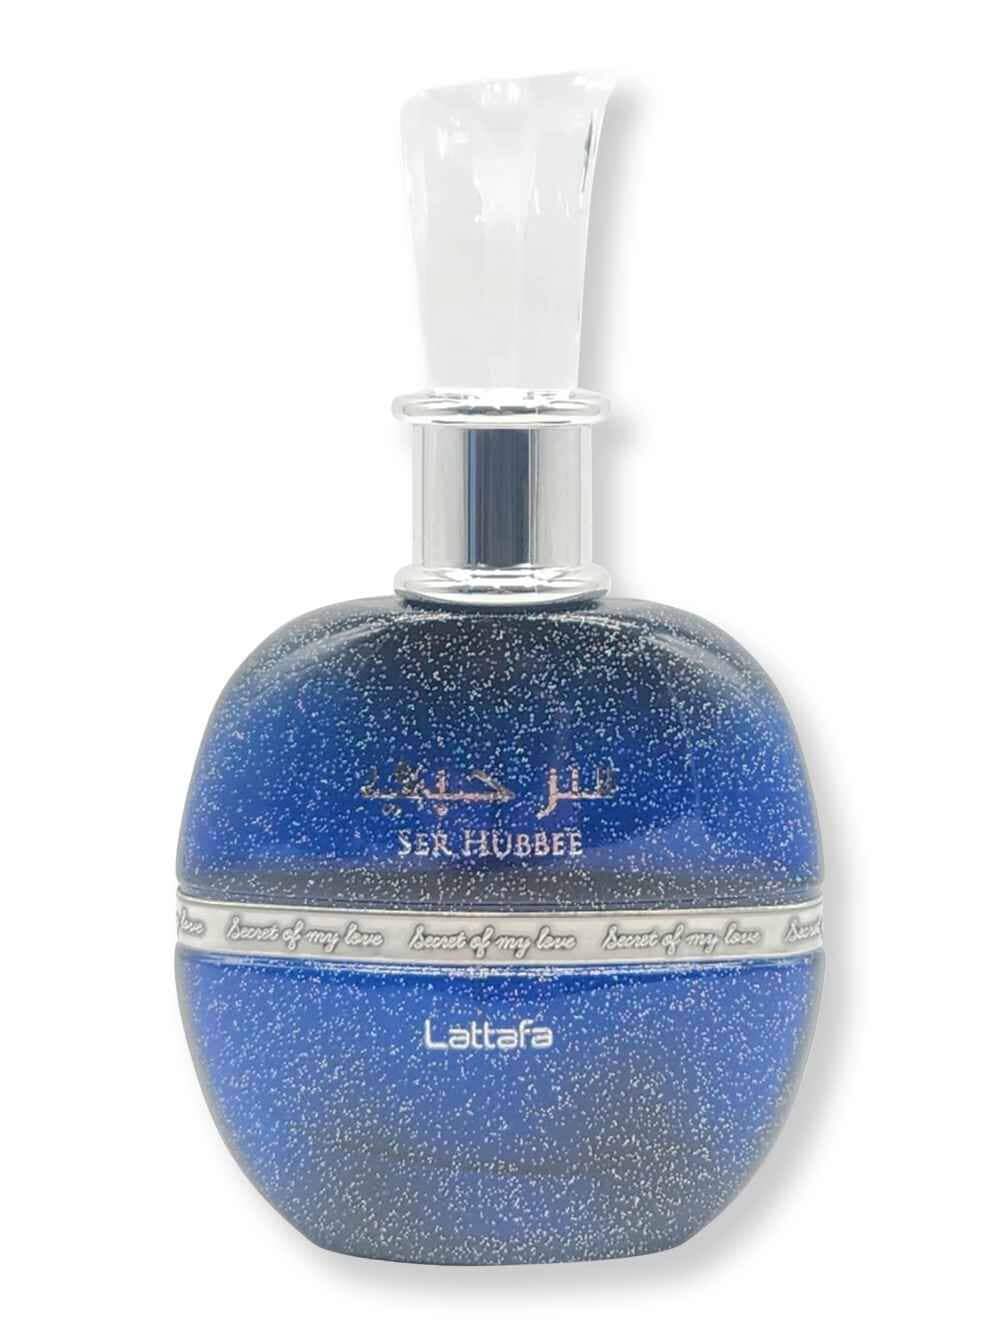 Lattafa Lattafa Ser Hubbee EDP Spray 100 ml Perfume 